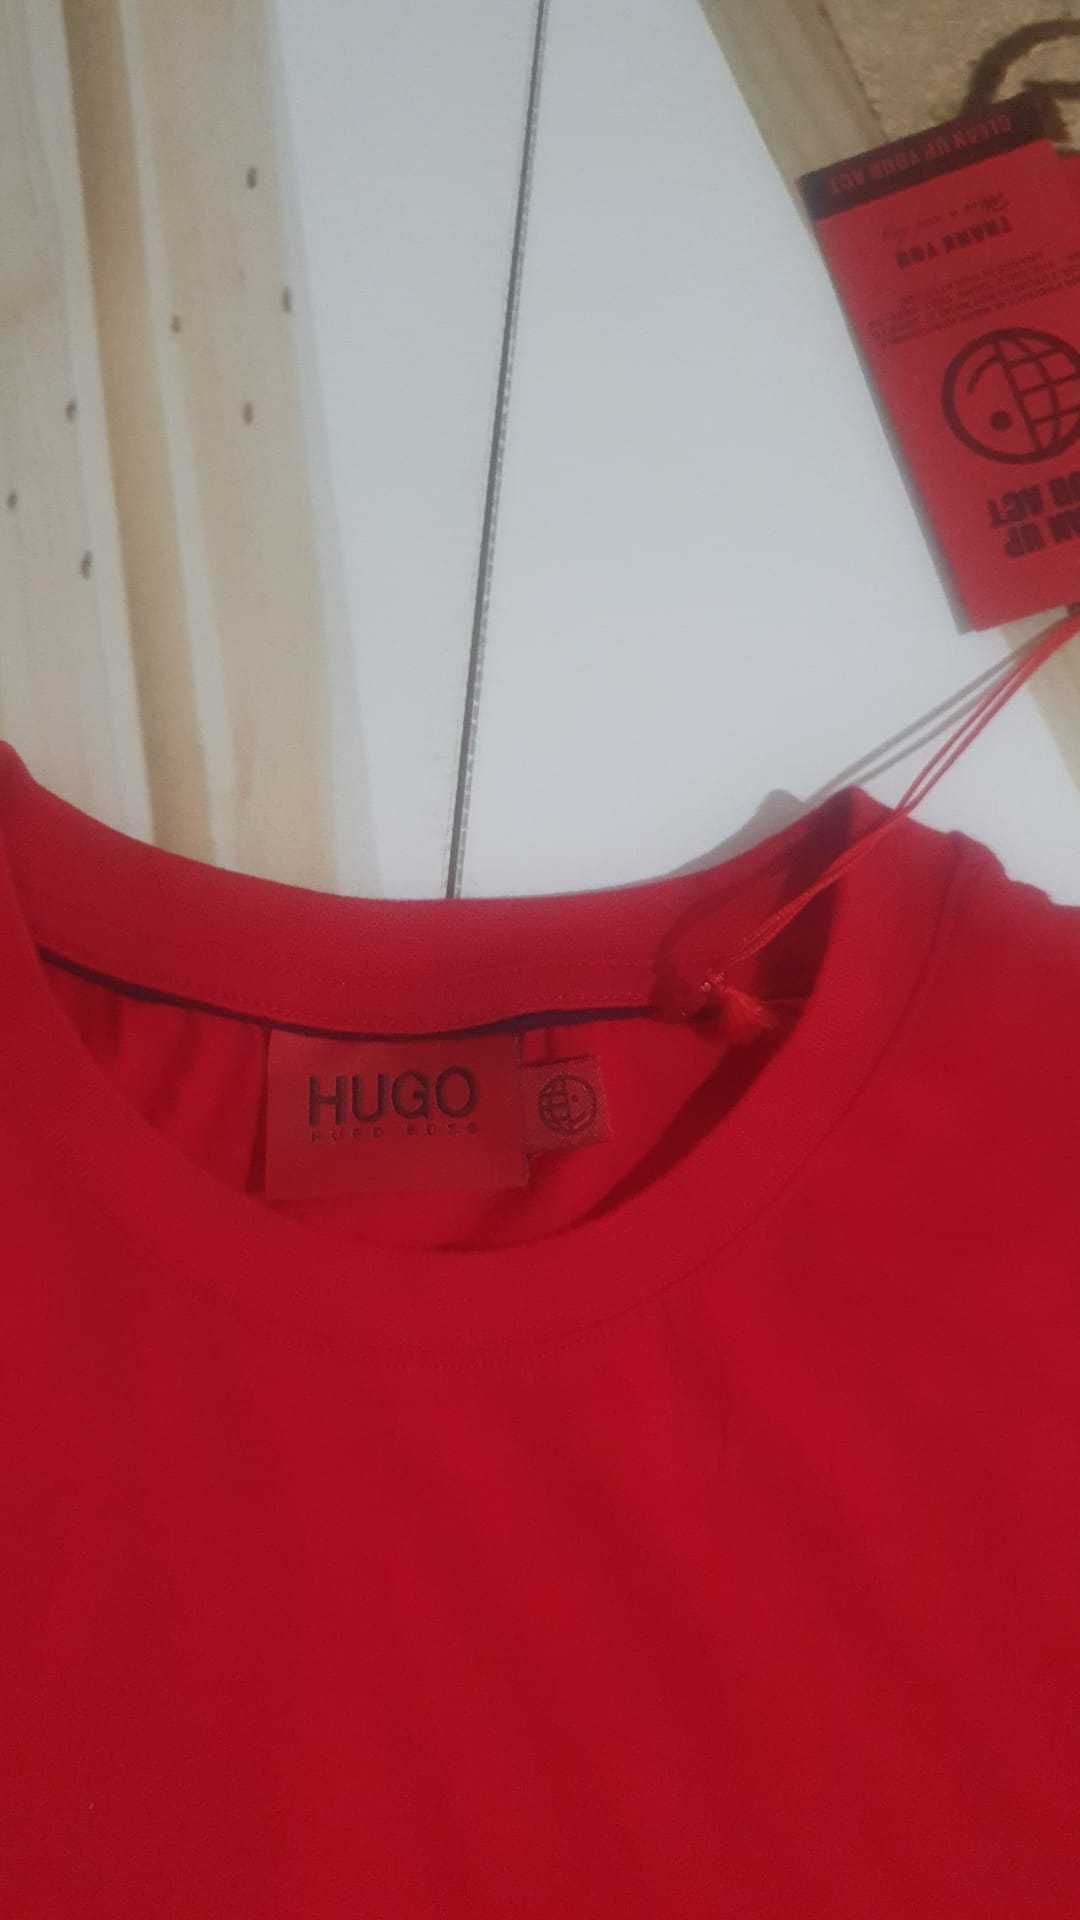 Vand tricou barbati Hugo Boss masura S original nou cu eticheta.